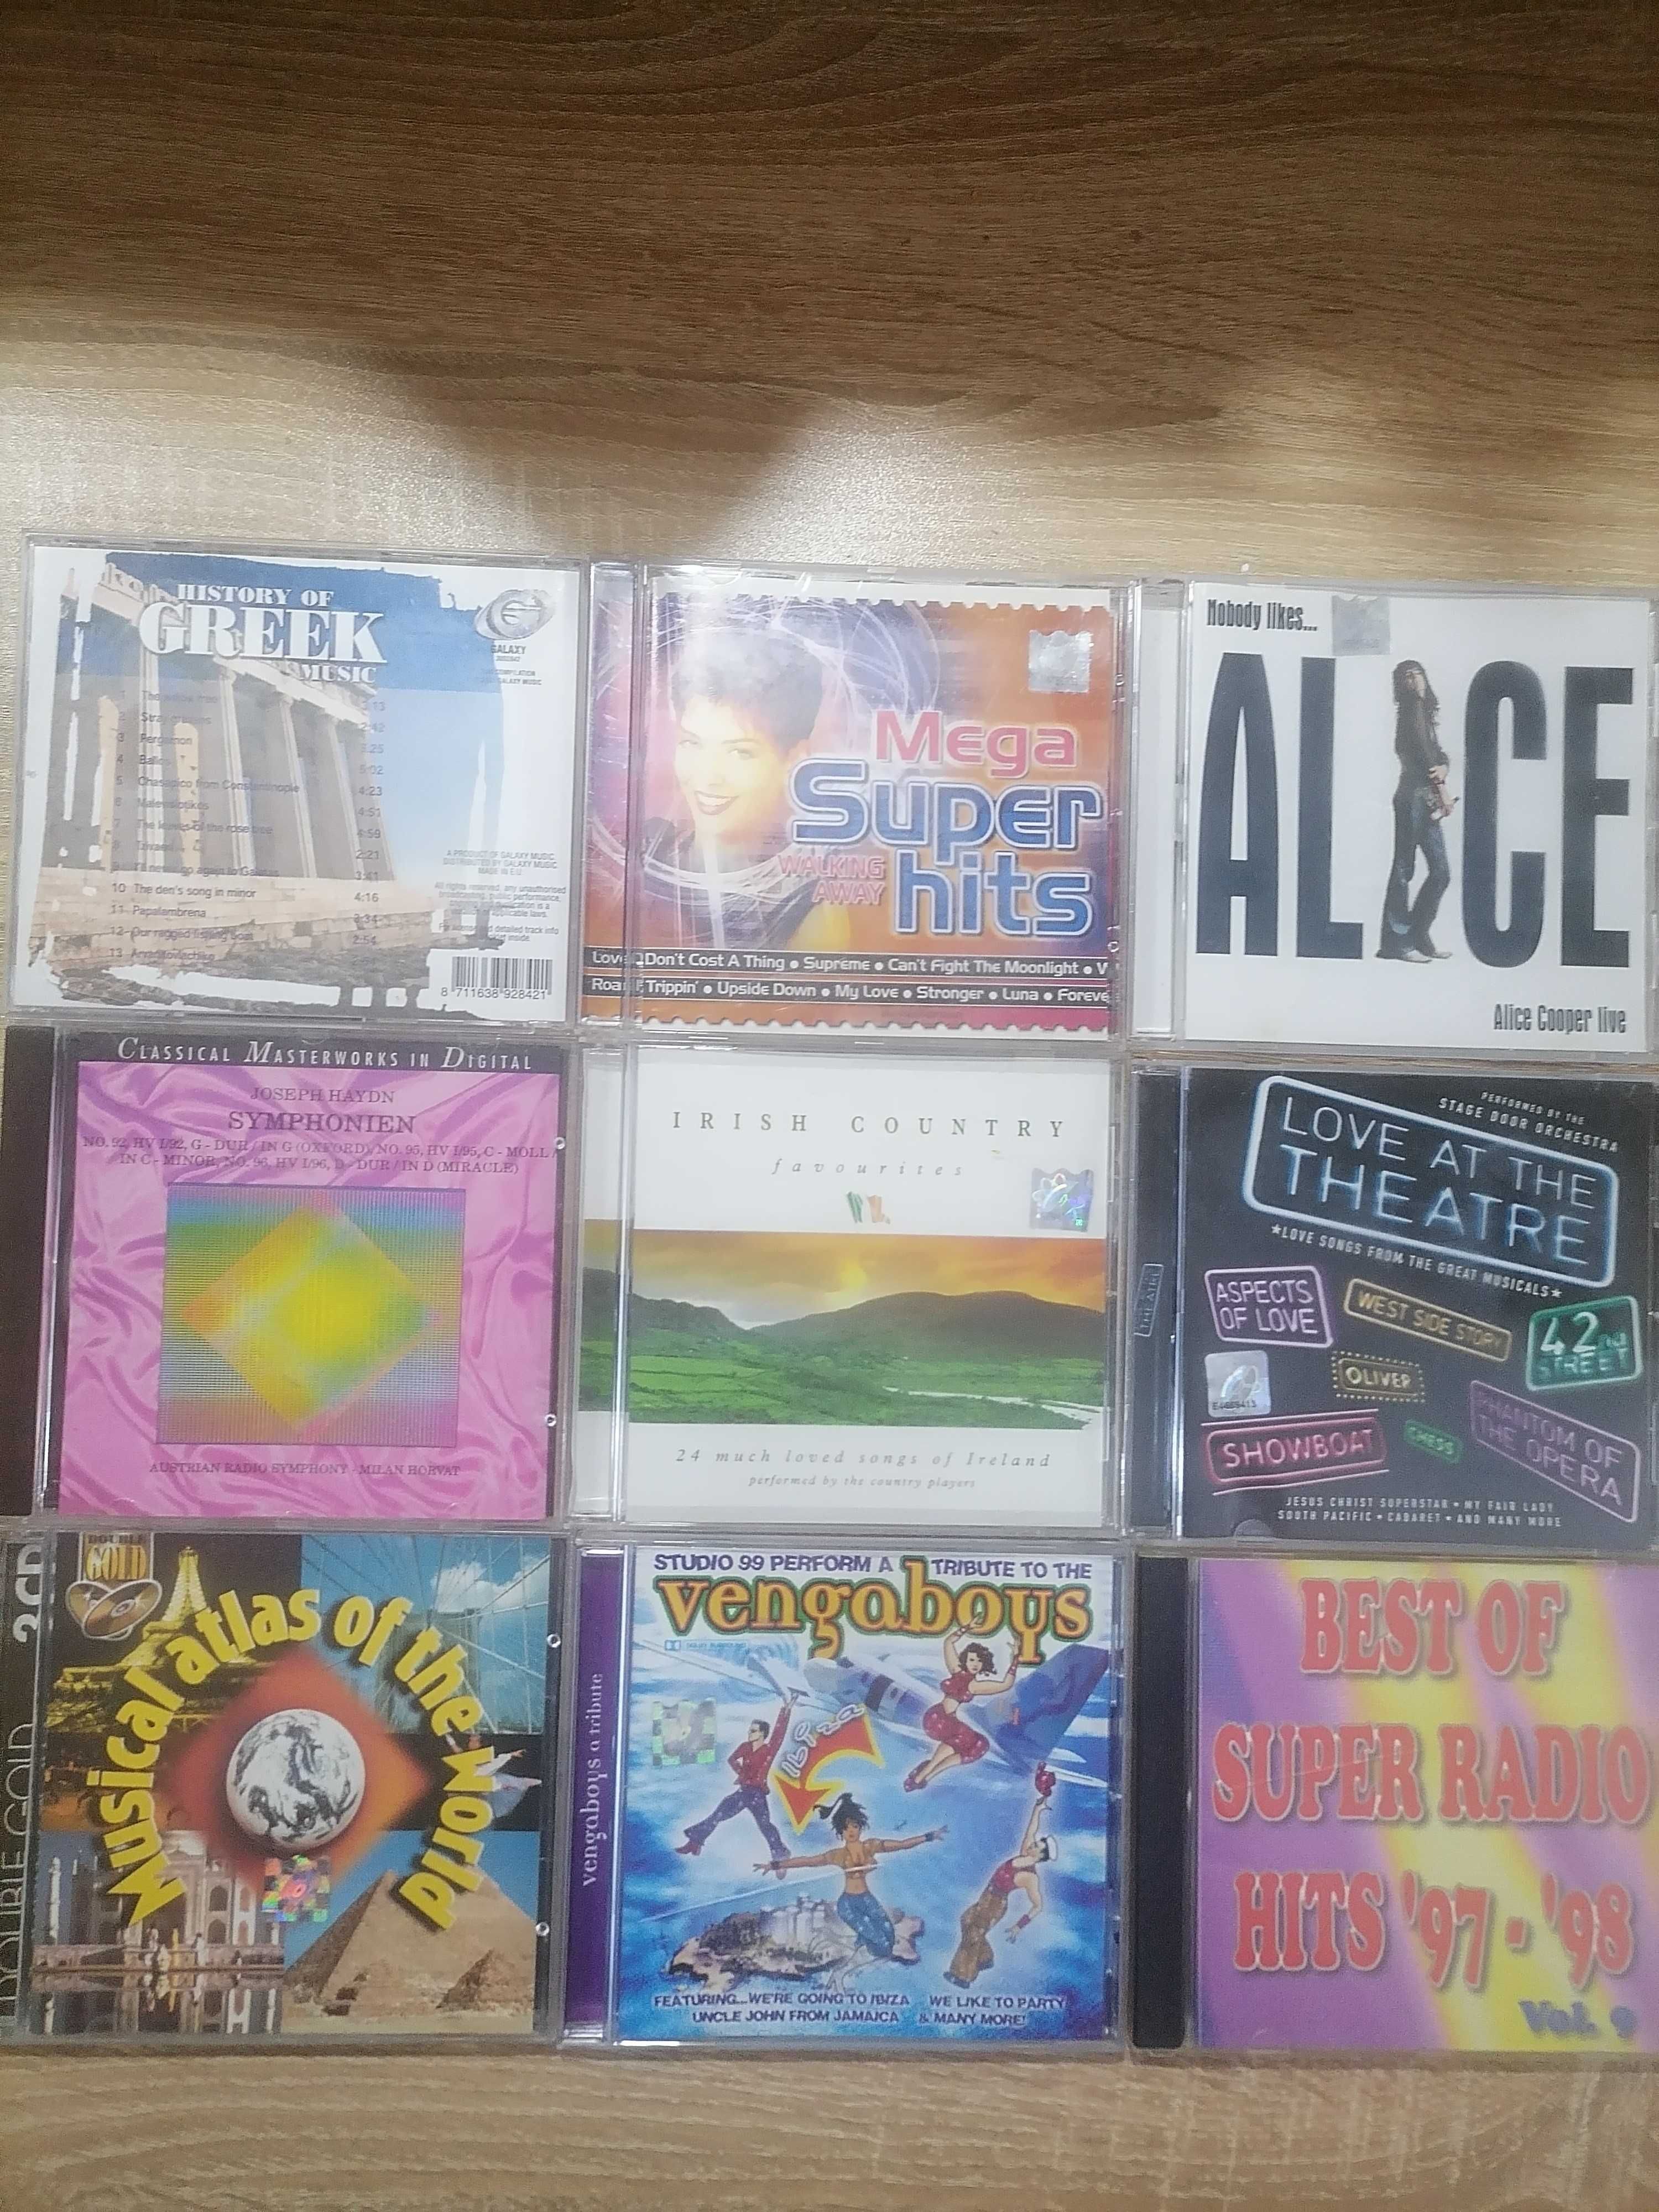 Colectie CD-uri muzica .